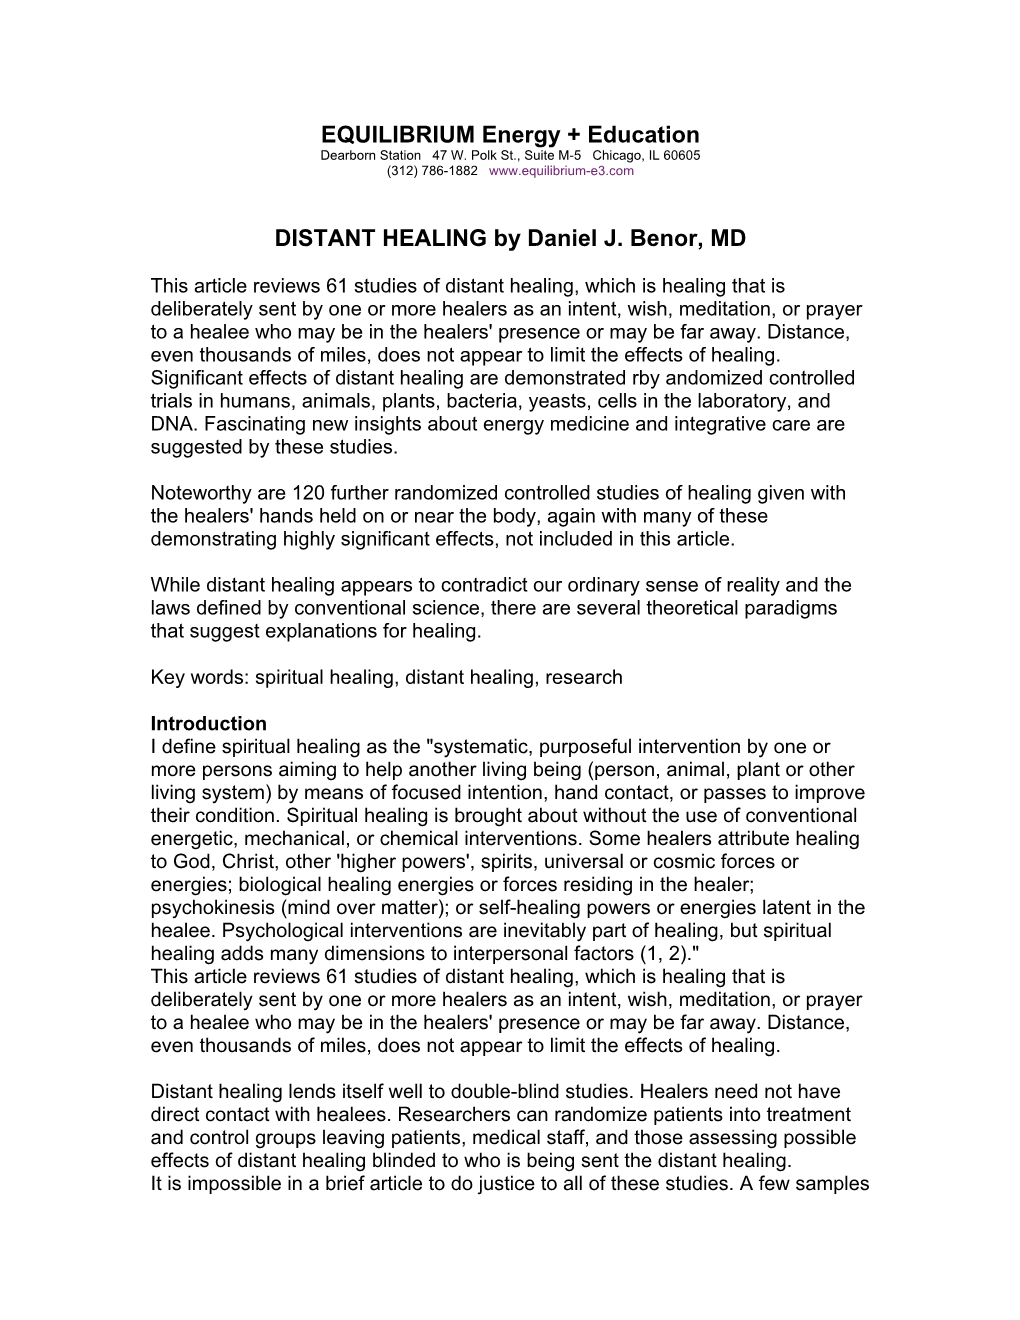 DISTANT HEALING by Daniel J. Benor, MD